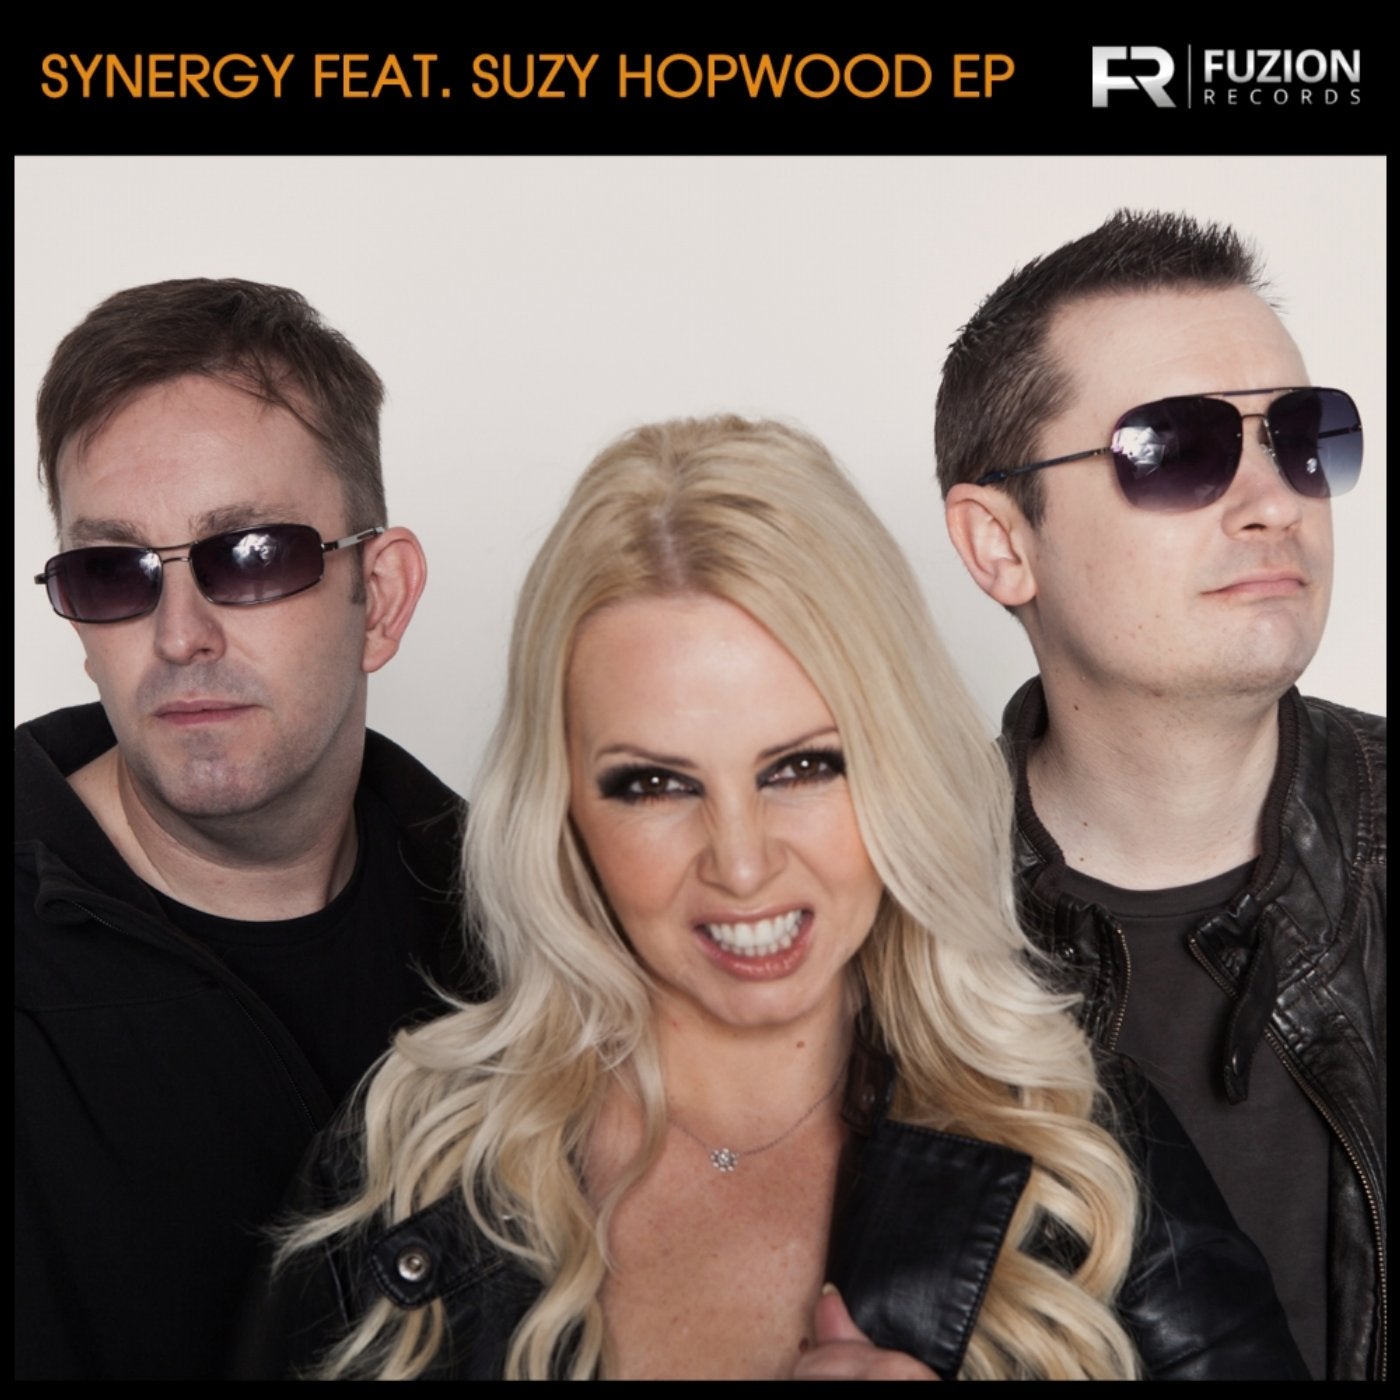 Suzy Hopwood EP